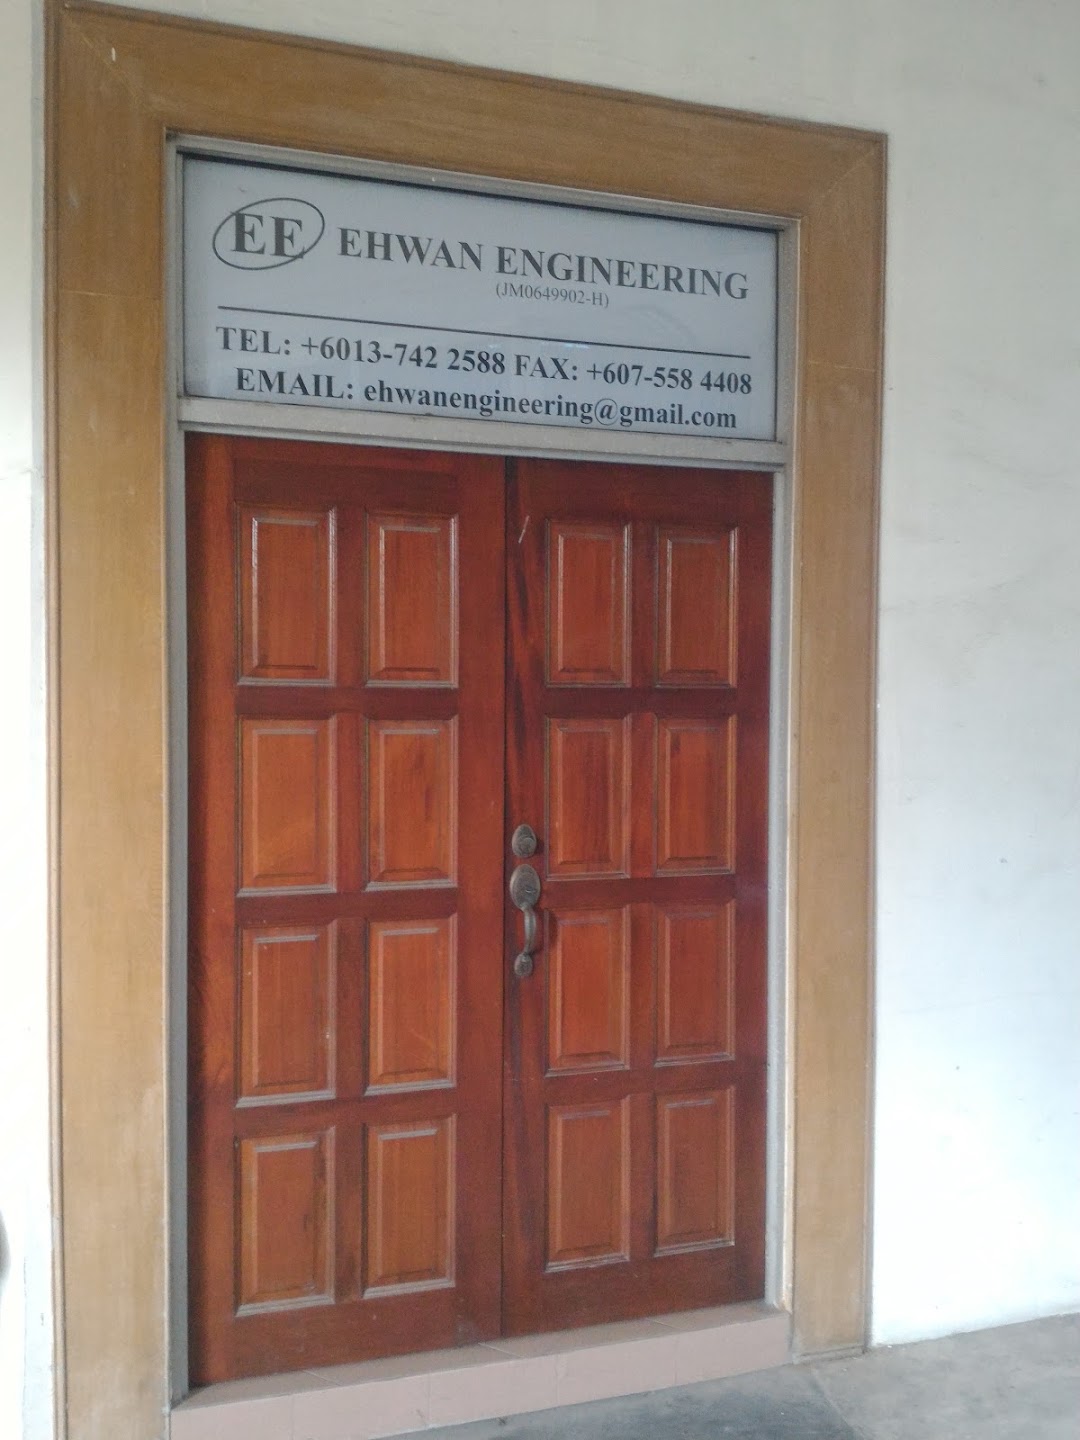 Ehwan Engineering